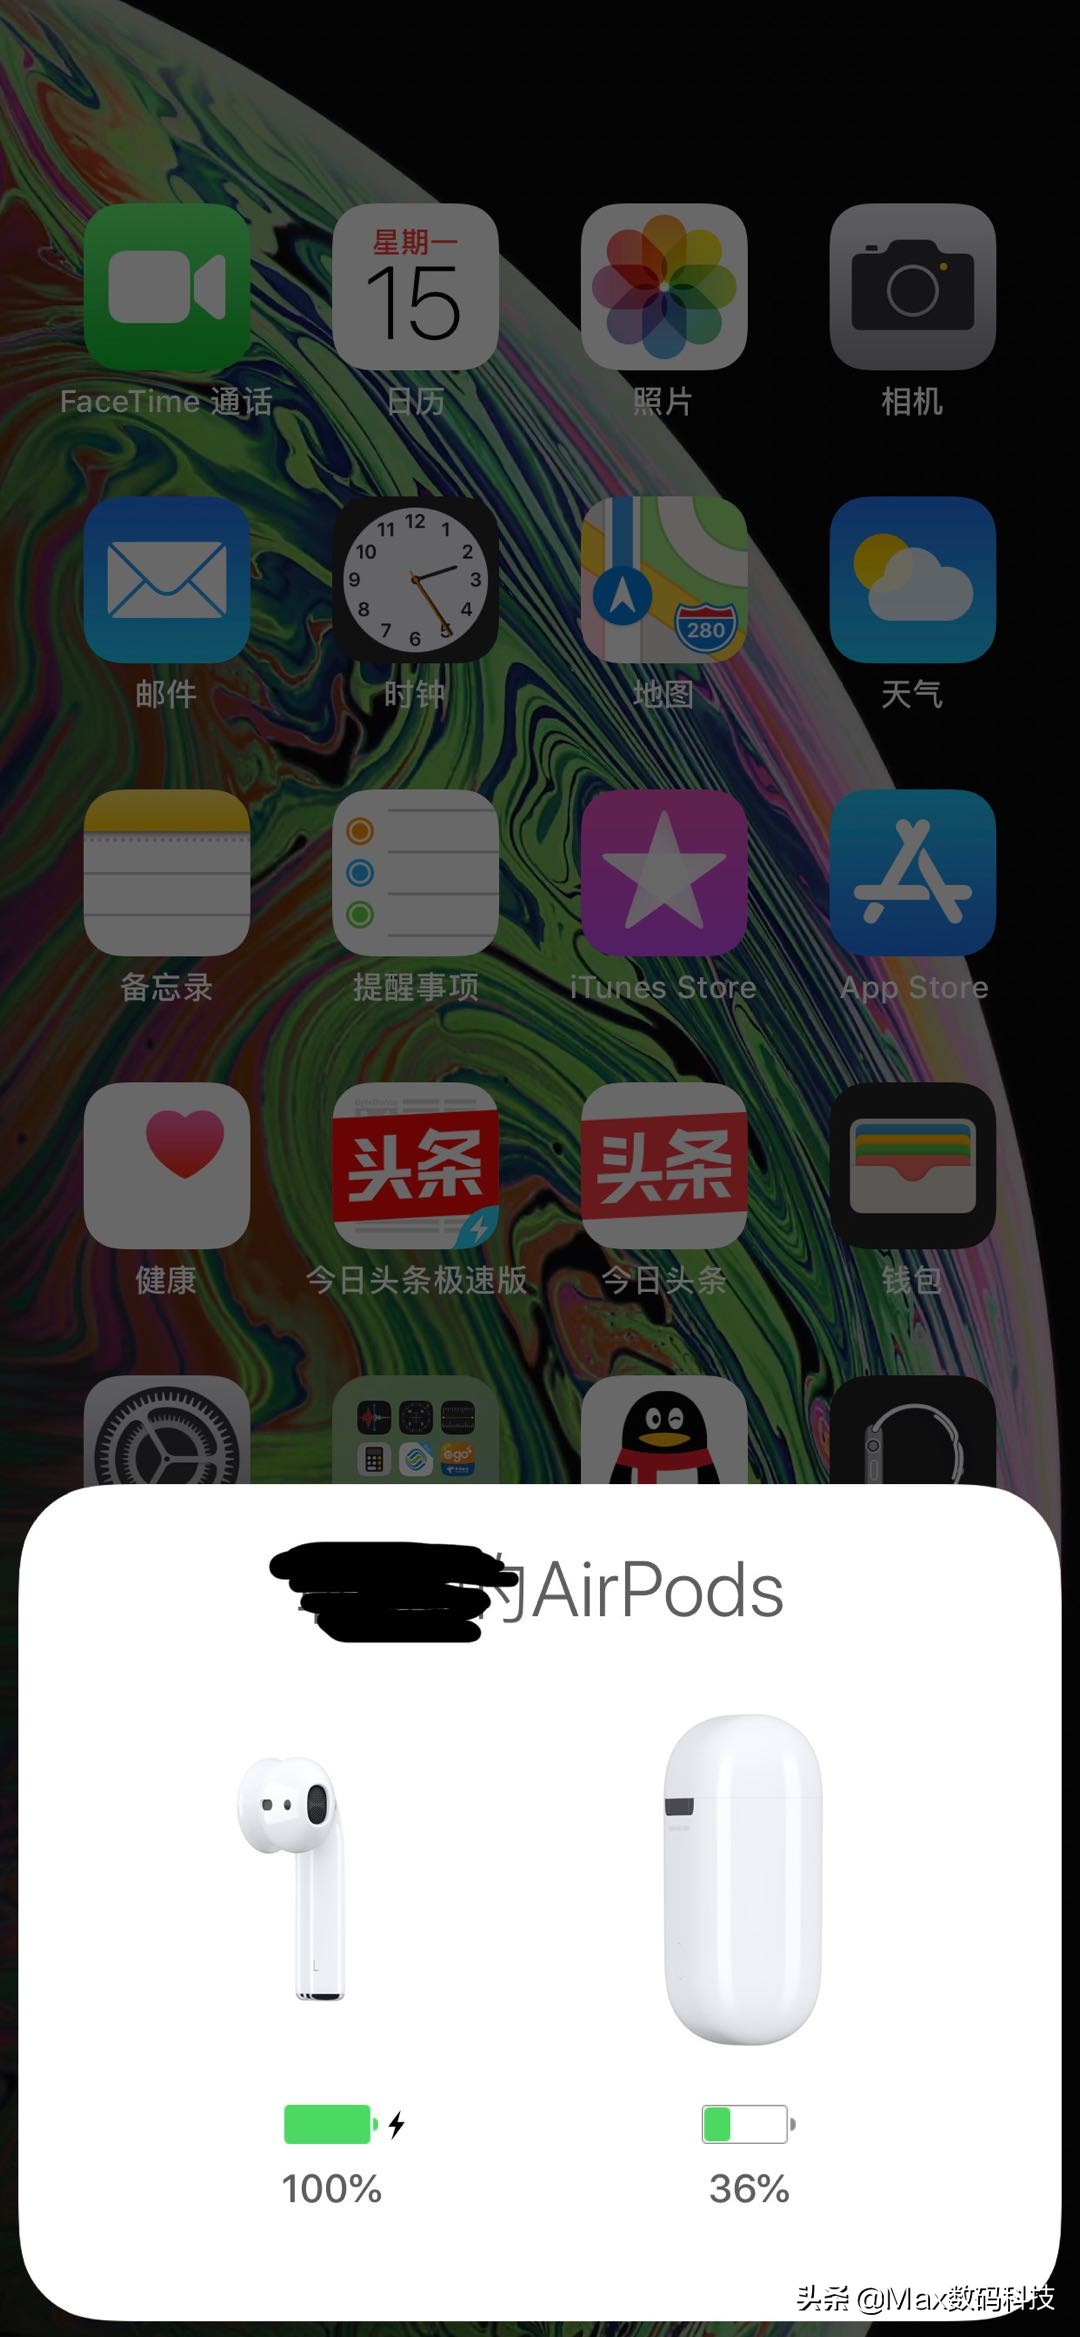 怎么改苹果耳机蓝牙的名字 airpods设置技巧